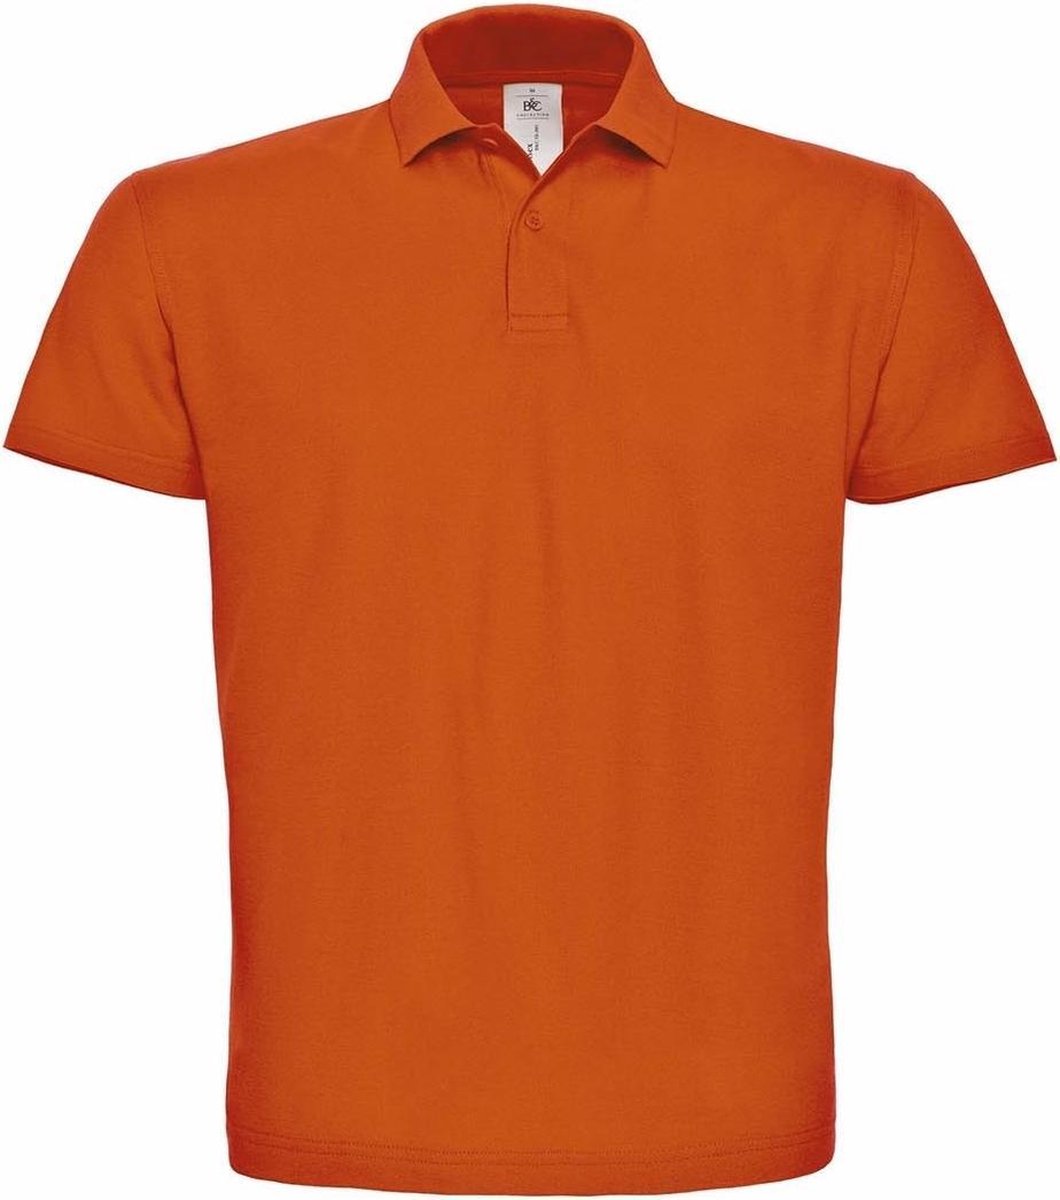 Oranje poloshirt basic van katoen voor heren - katoen - 180 grams - polo t-shirts - Koningsdag of EK / WK supporter kleding M (50)